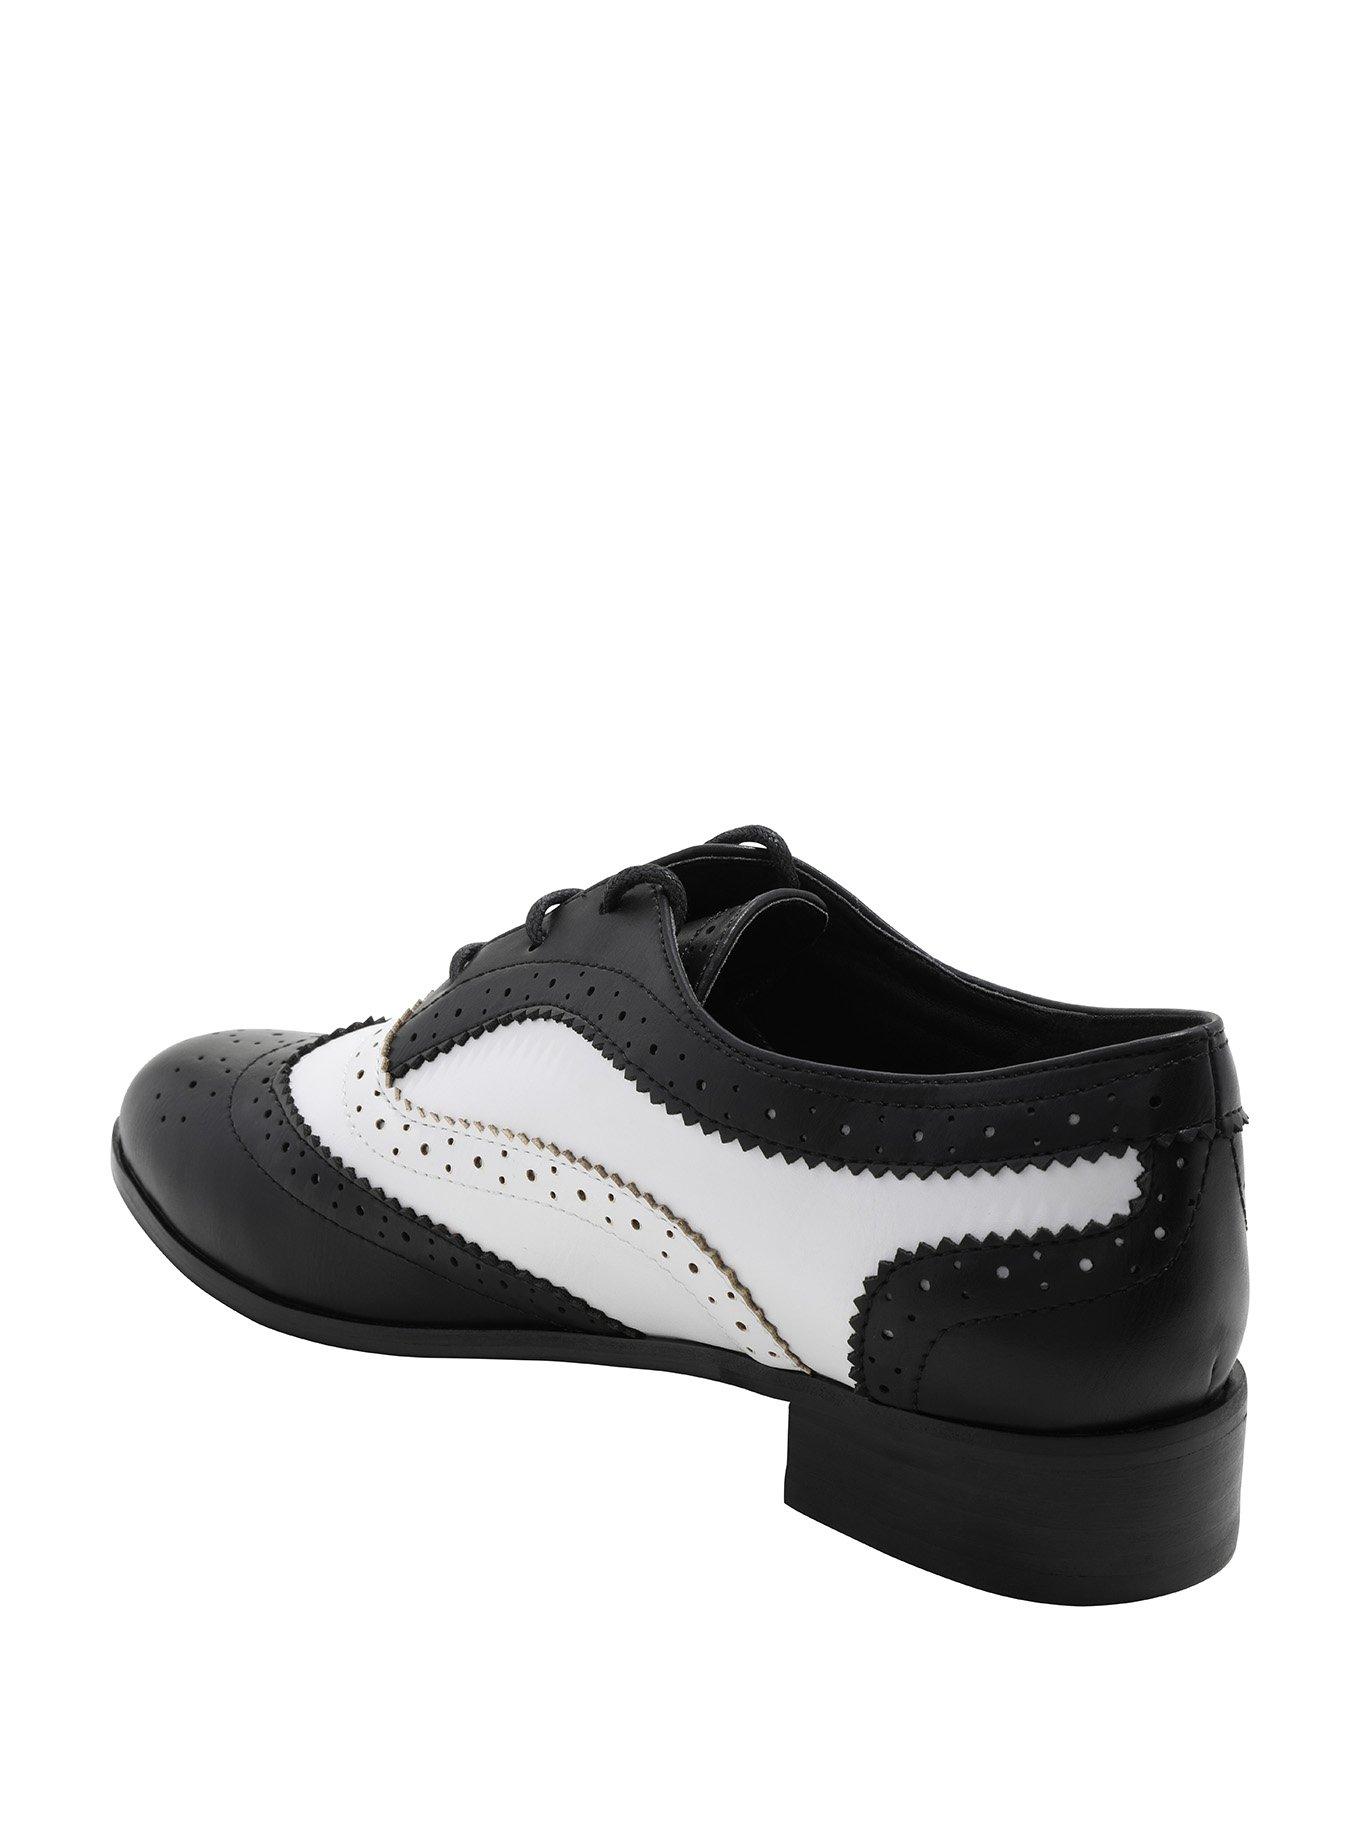 Black & White Saddle Shoes, , alternate